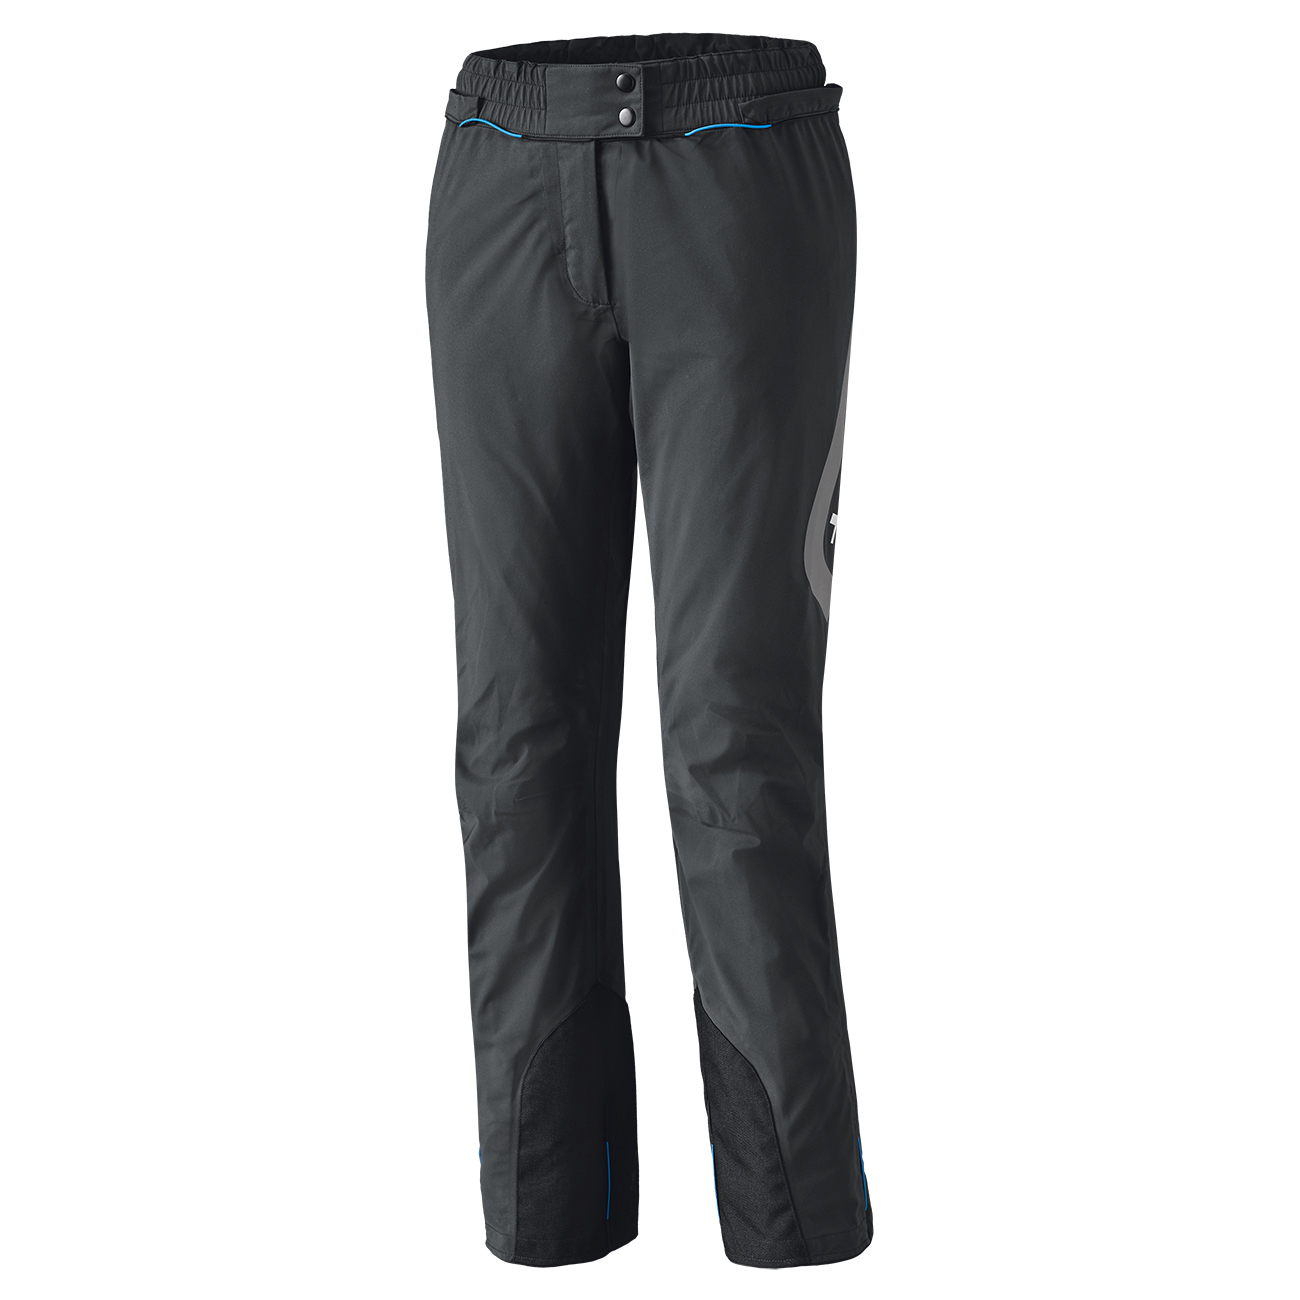 Clip-in GTX BASE GORE-TEX® Packlite pantalon